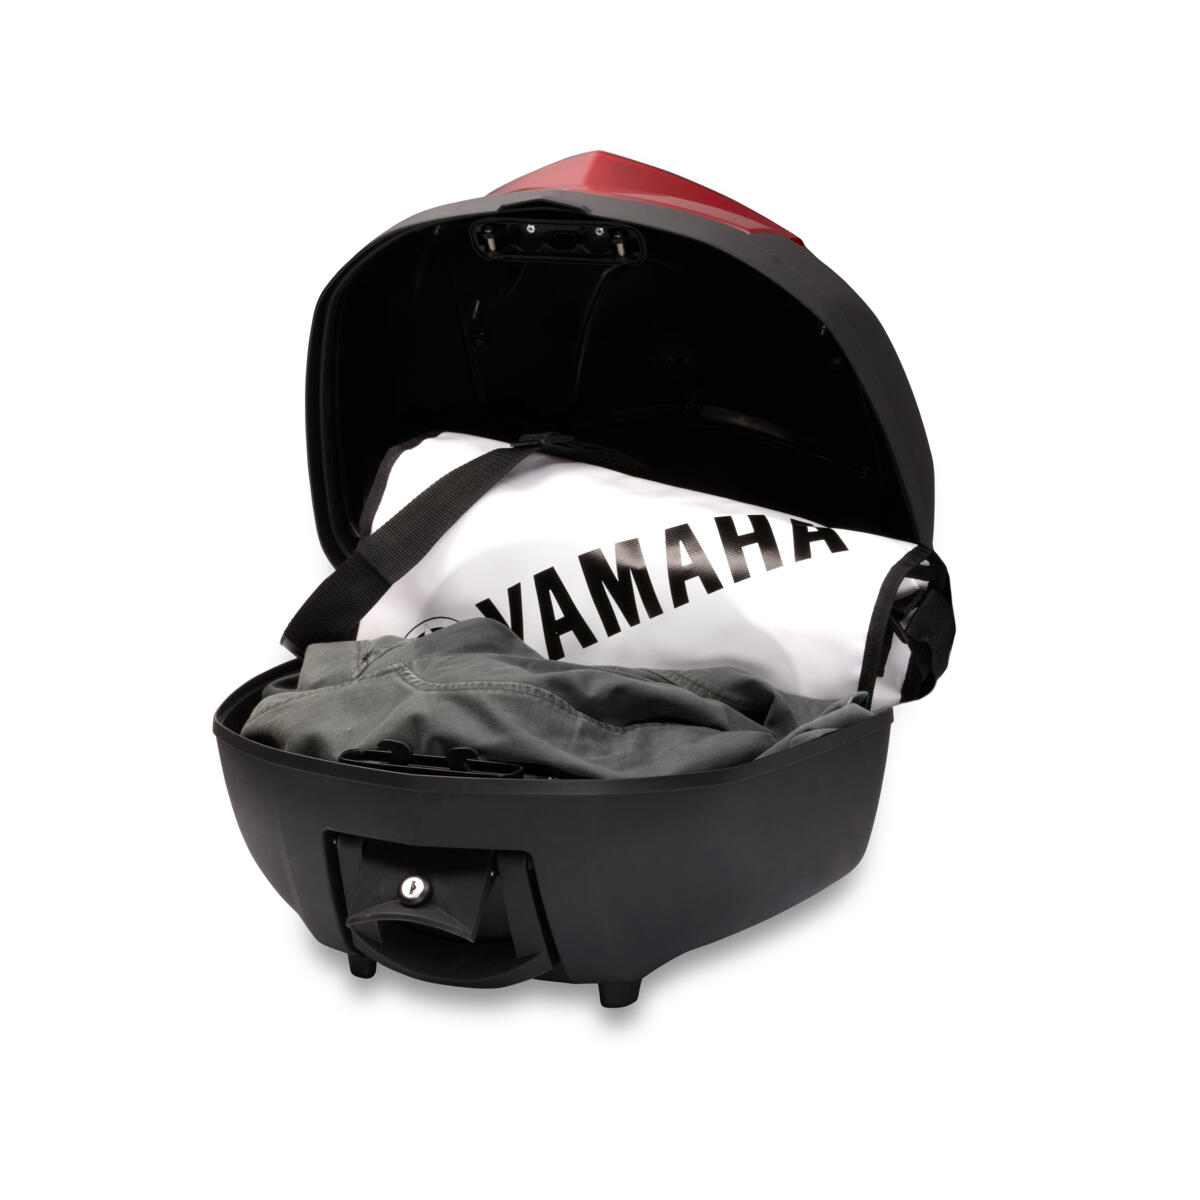 Hochwertiges Topcase für extra Gepäck-/Stauraum auf Ihrer Yamaha.